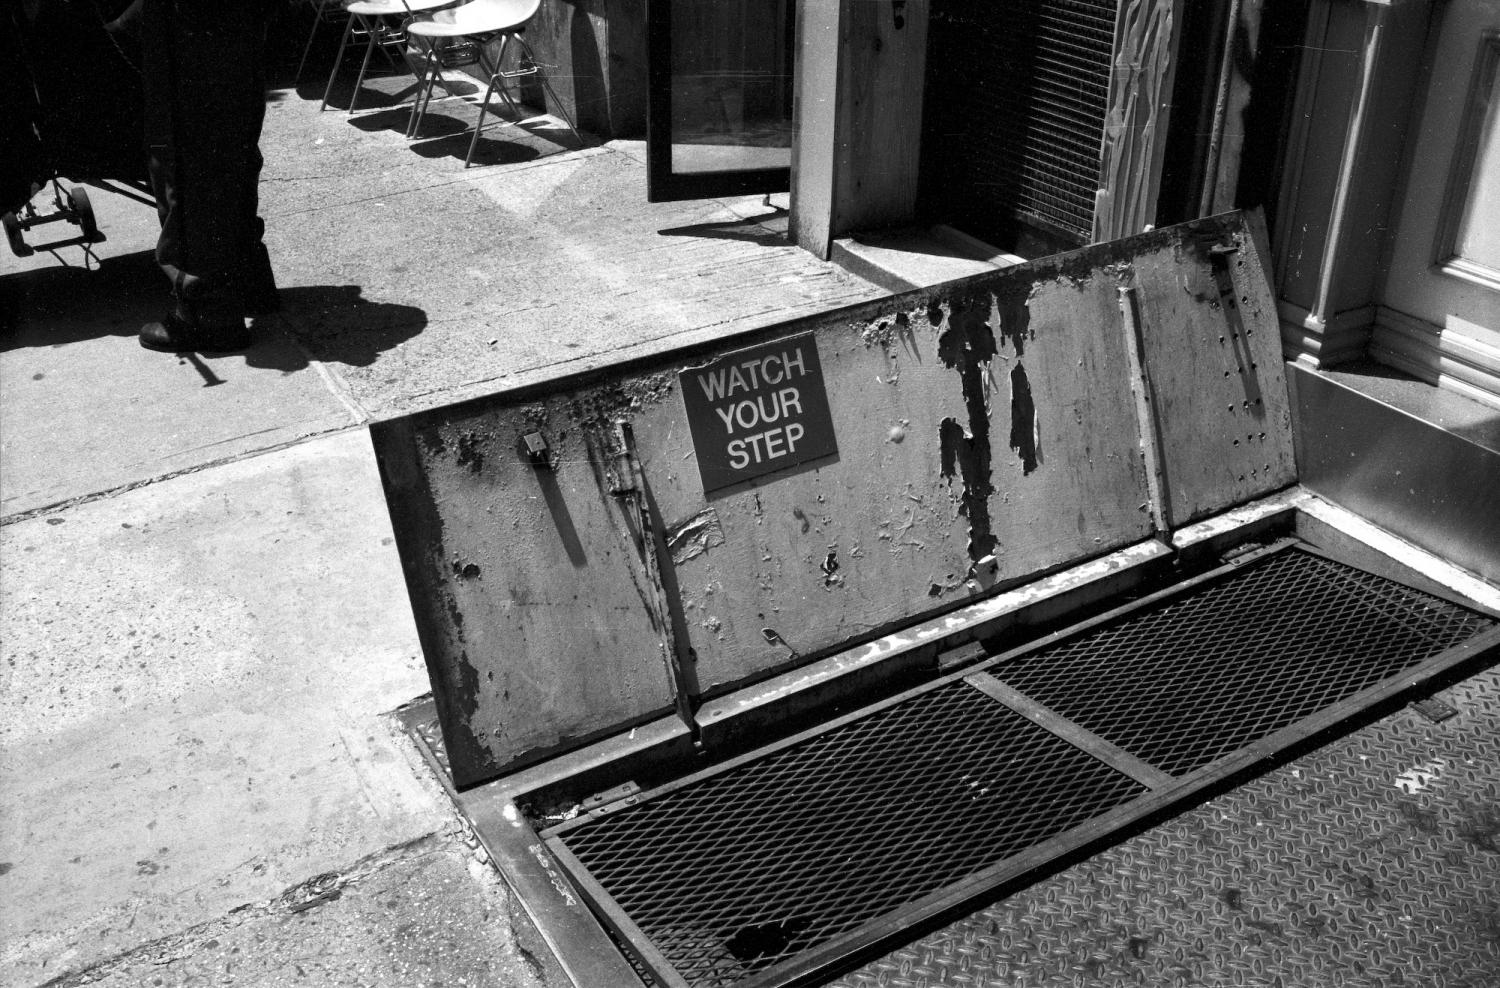 Une porte ouverte dans un trottoir donne accès à un cellier et prévient : Watch your step. New York, juin 2003.